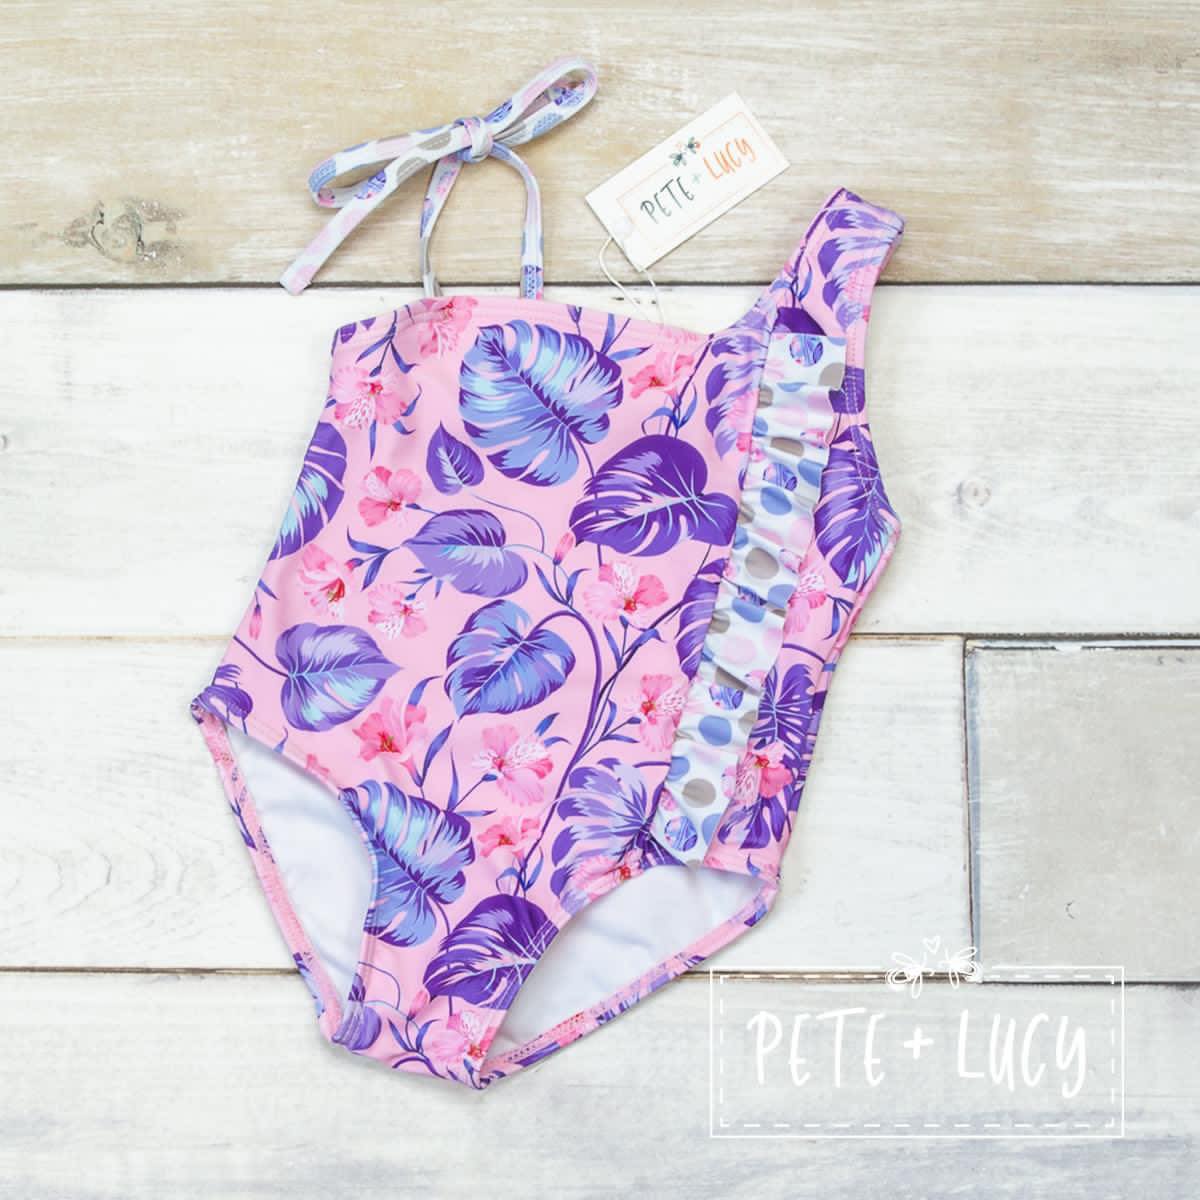 Pete & Lucy Swim 2022 Tropical Lilac 1 Piece